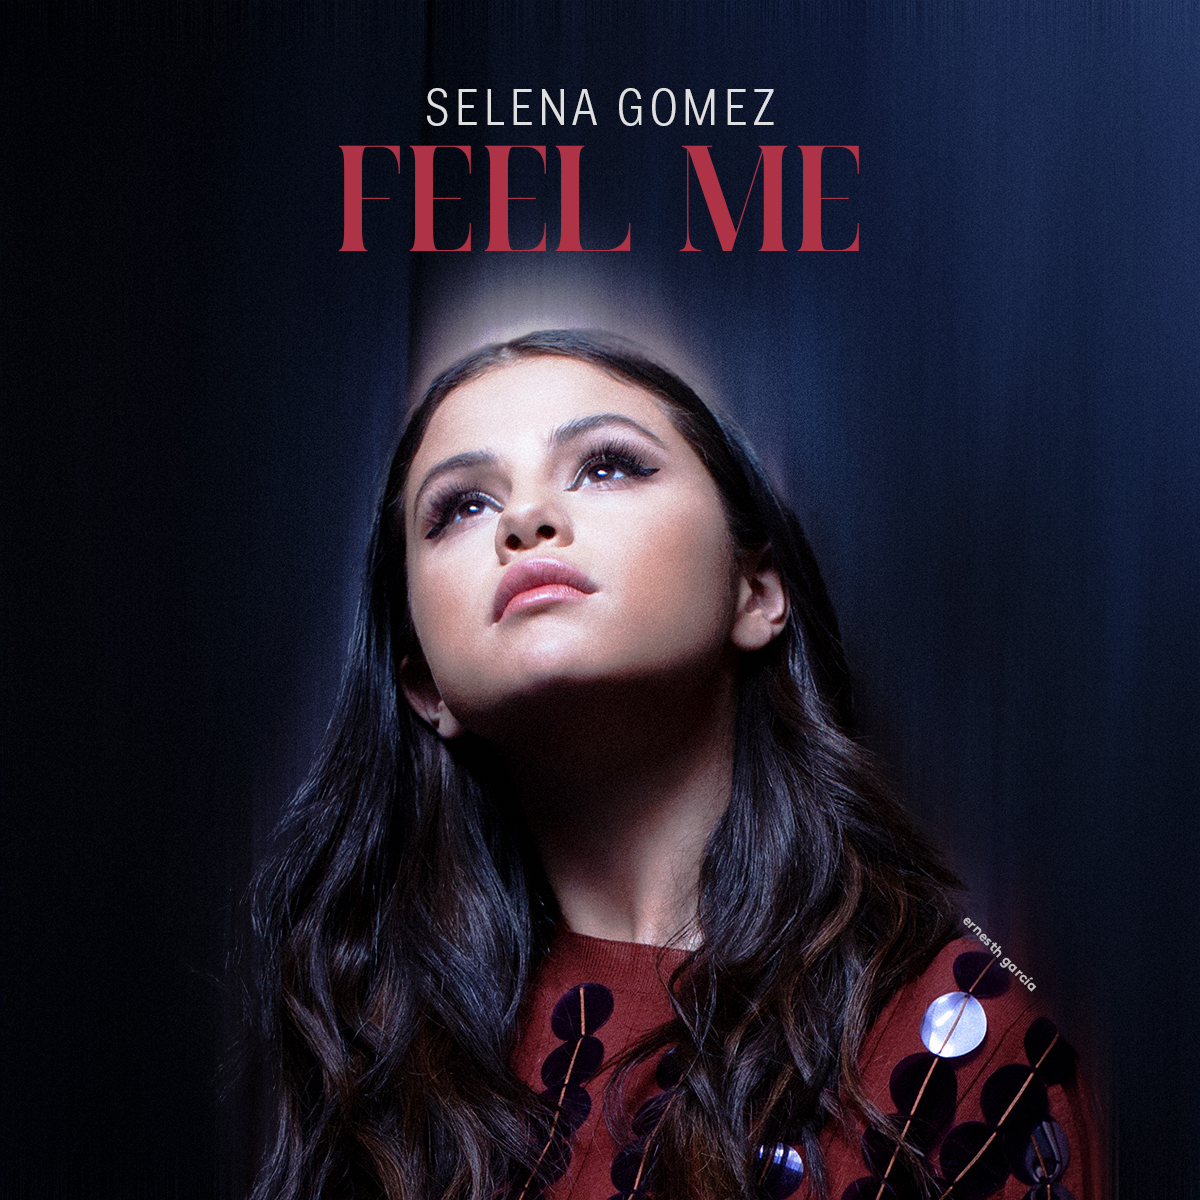 Feel Me | Selena Gomez Wiki | FANDOM powered by Wikia